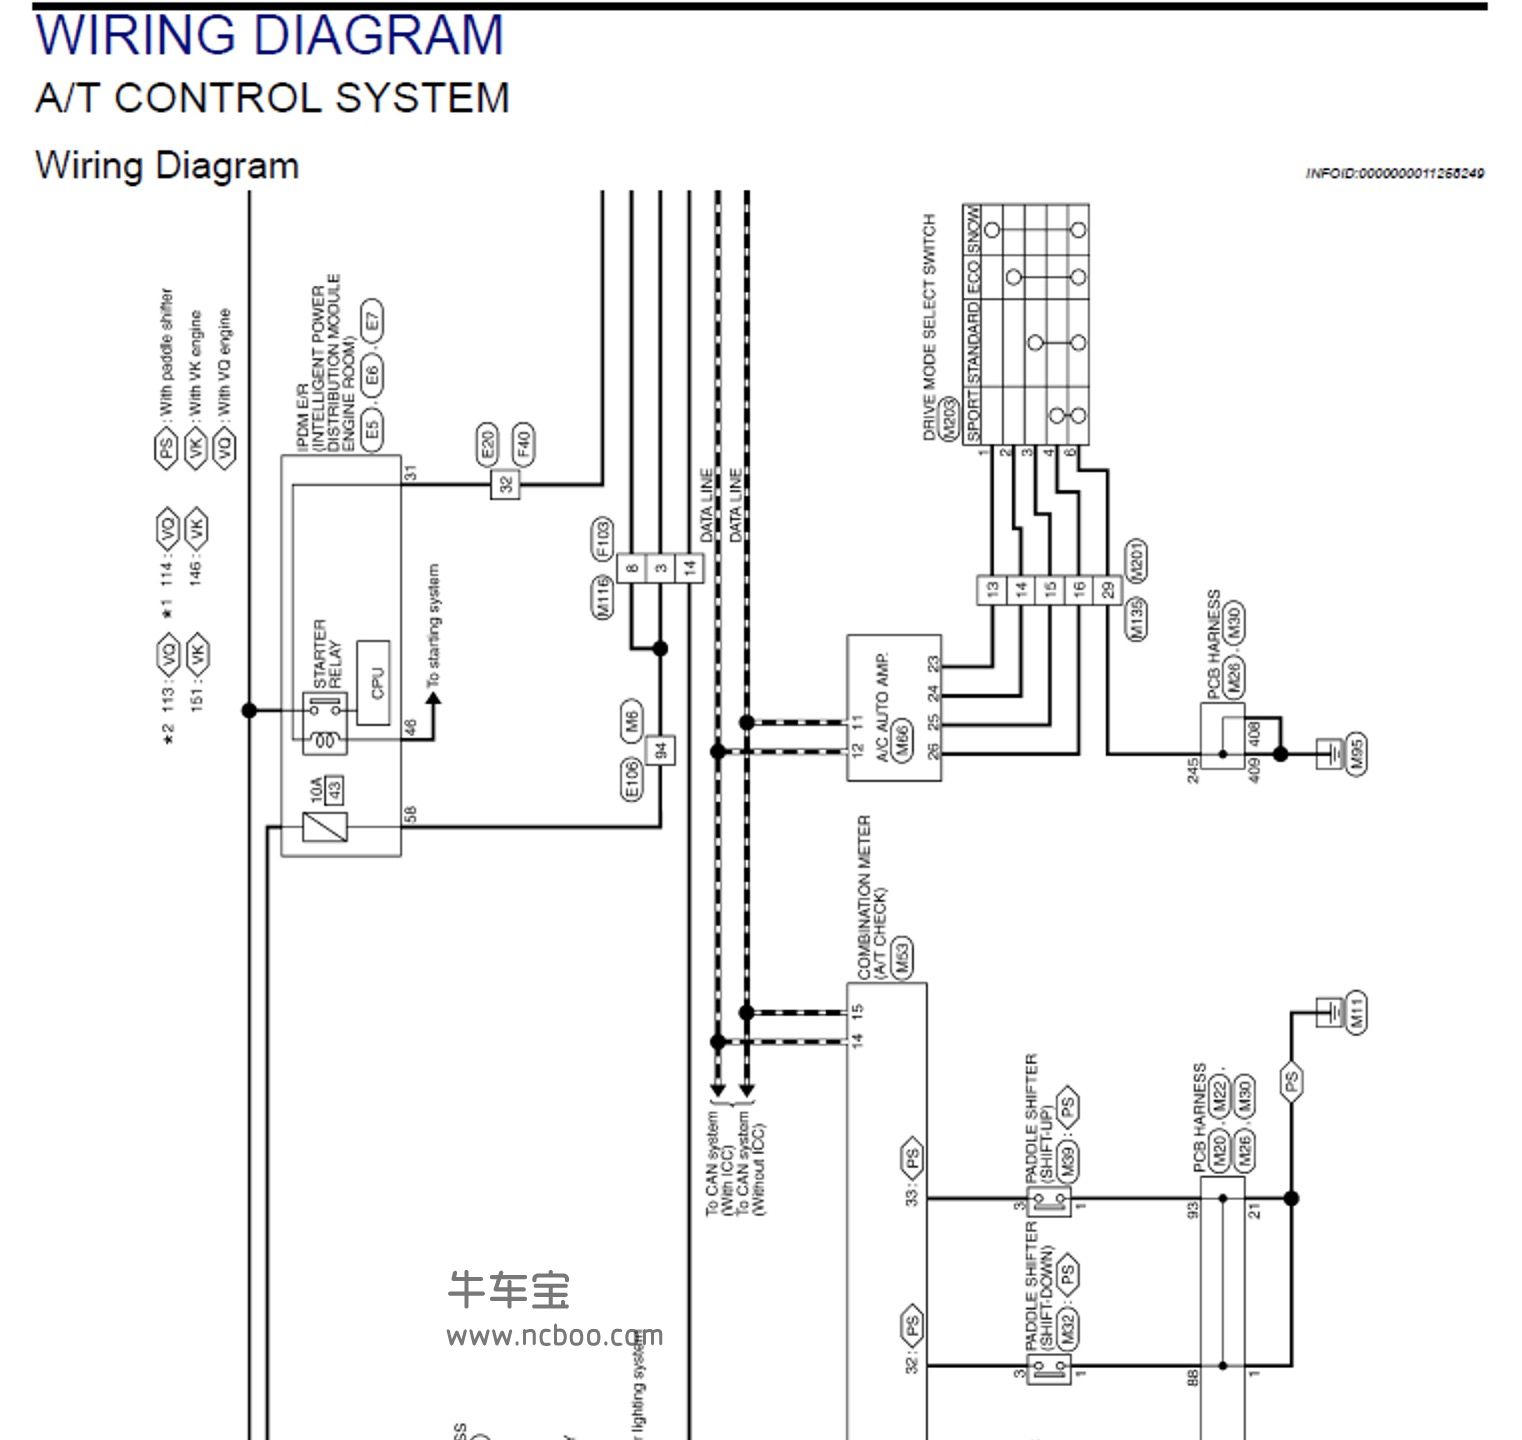 2014-2015款英菲尼迪Q70原厂维修手册含电路图[英文]